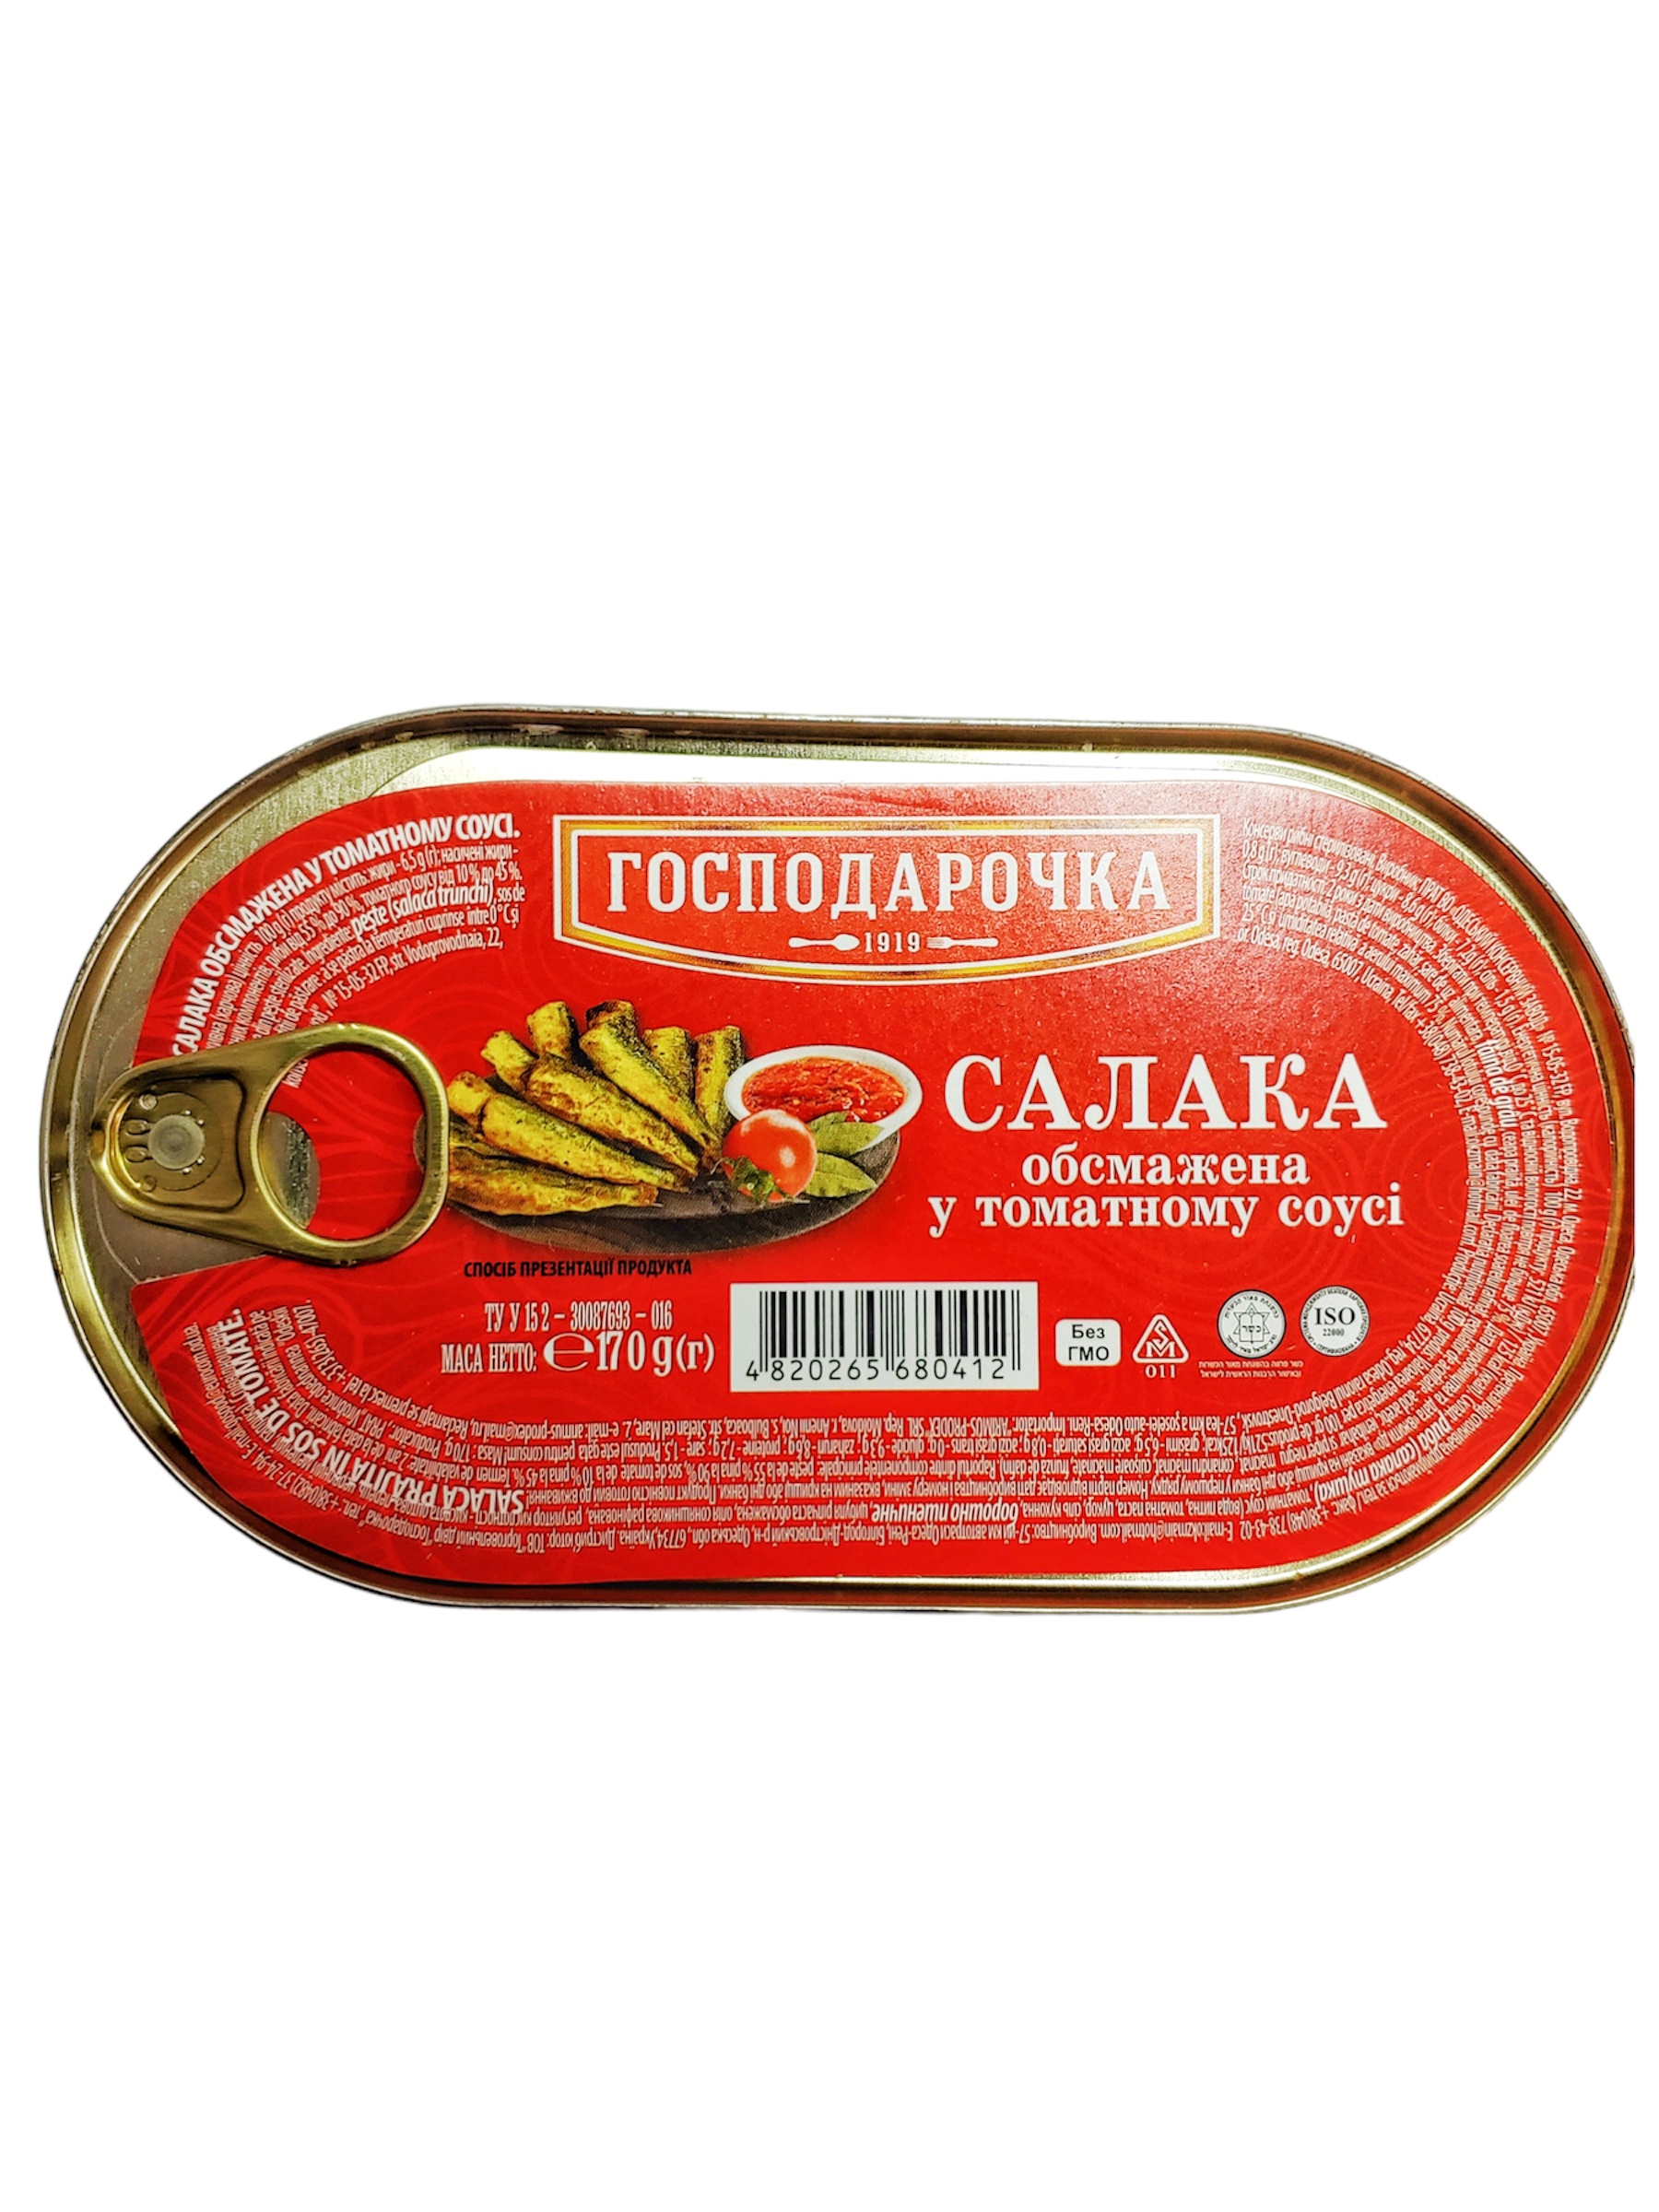 Салака обжаренная в томатном соусе 170г